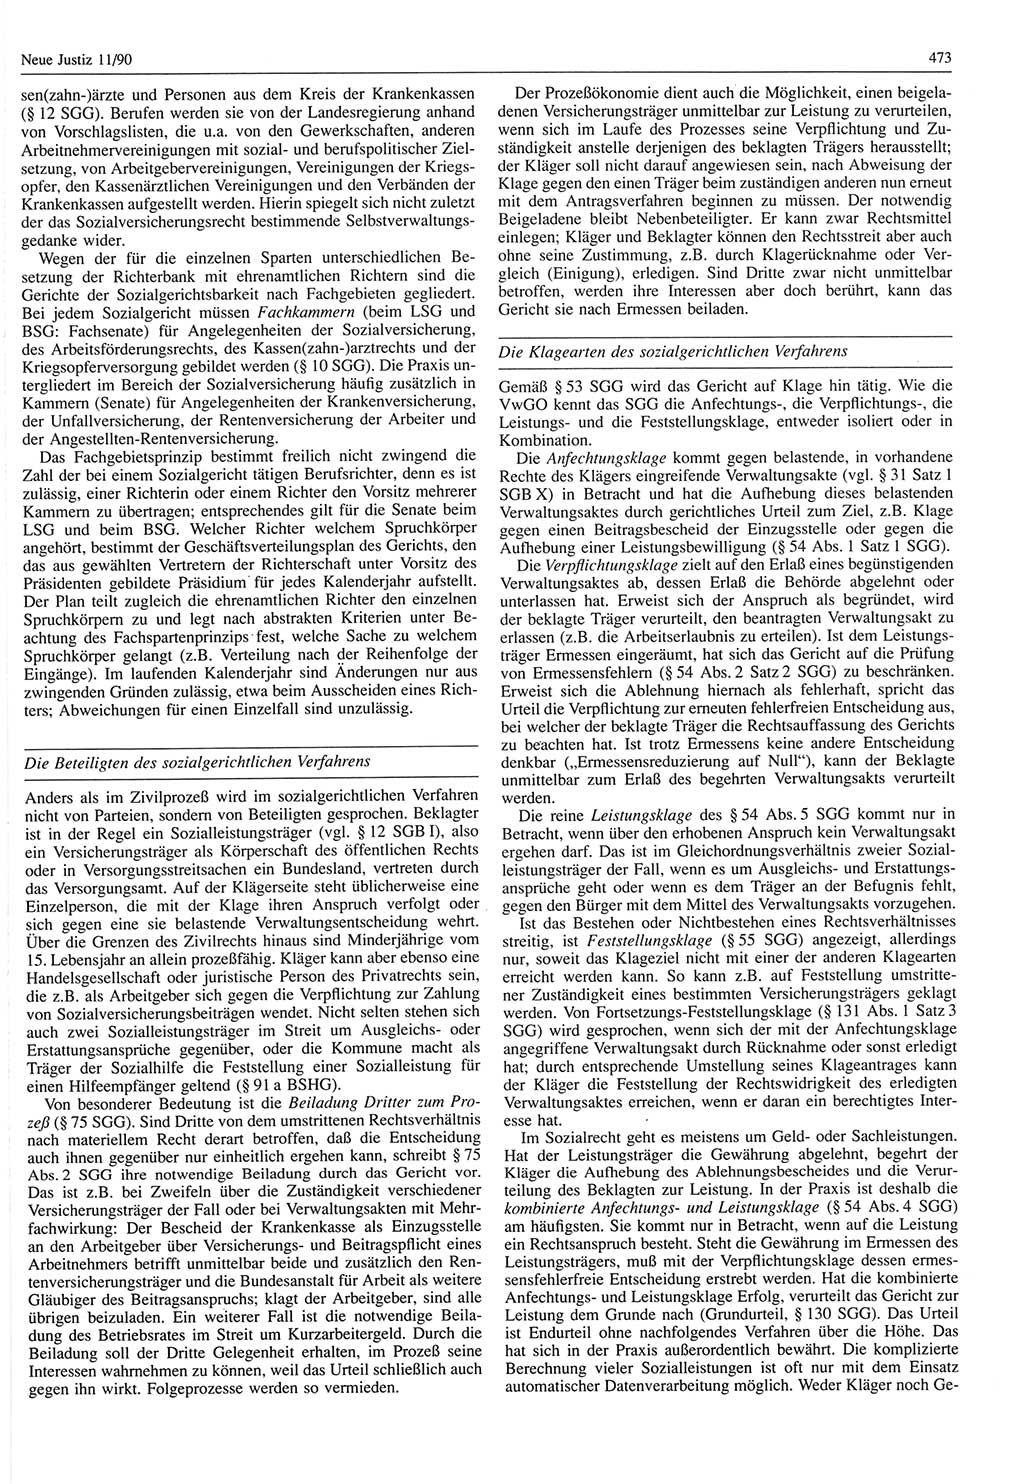 Neue Justiz (NJ), Zeitschrift für Rechtsetzung und Rechtsanwendung [Deutsche Demokratische Republik (DDR)], 44. Jahrgang 1990, Seite 473 (NJ DDR 1990, S. 473)